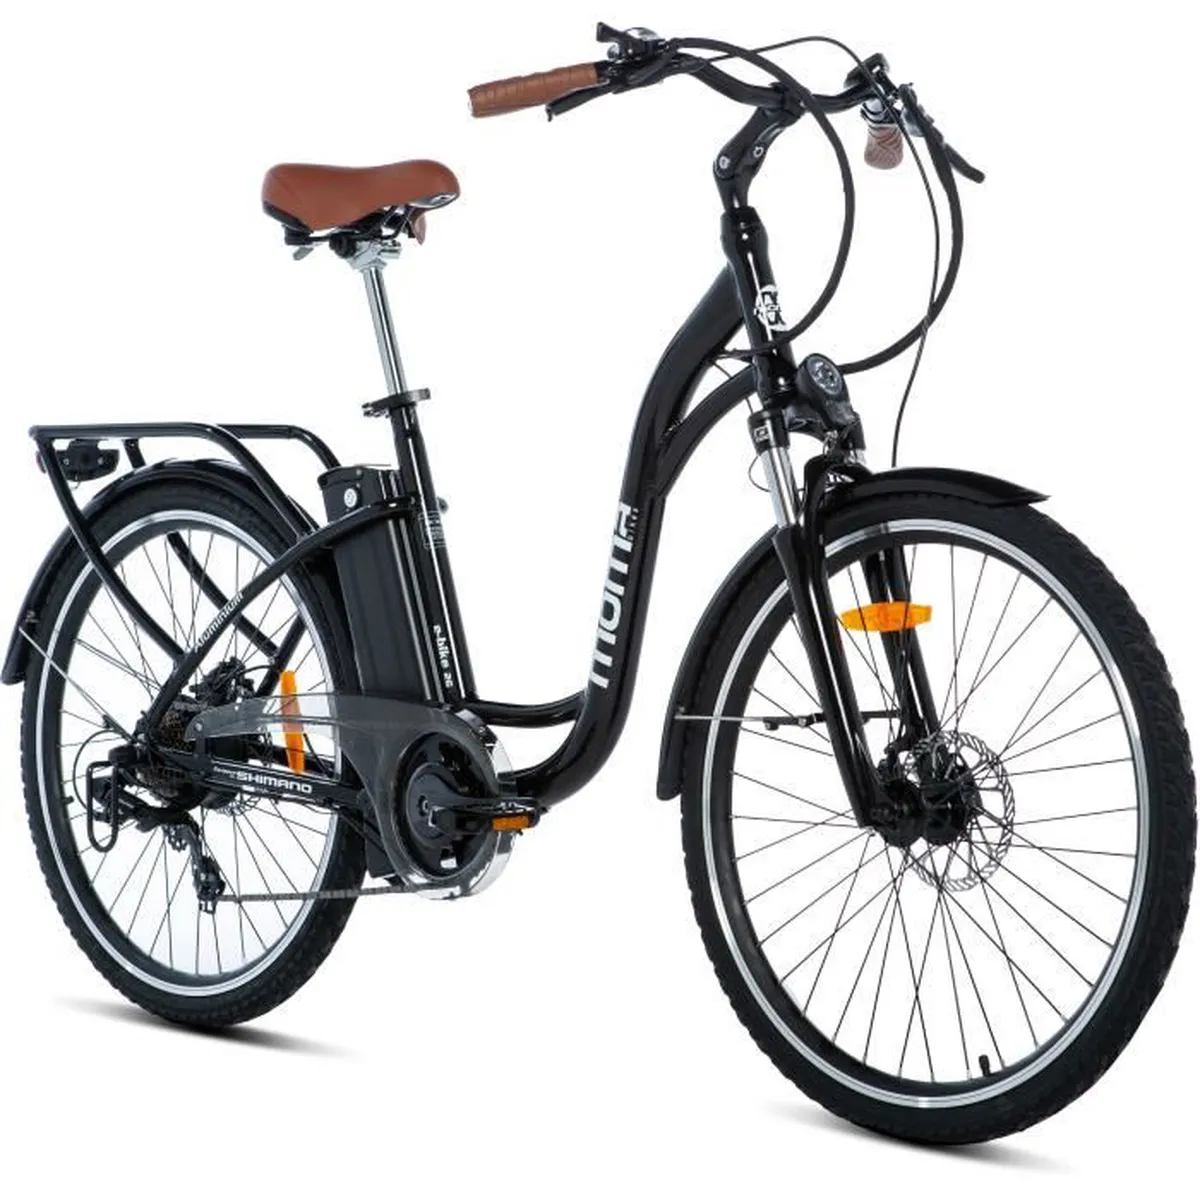 Cdiscount : - 50 % sur le vélo électrique Moma Bikes disponible à prix fou !